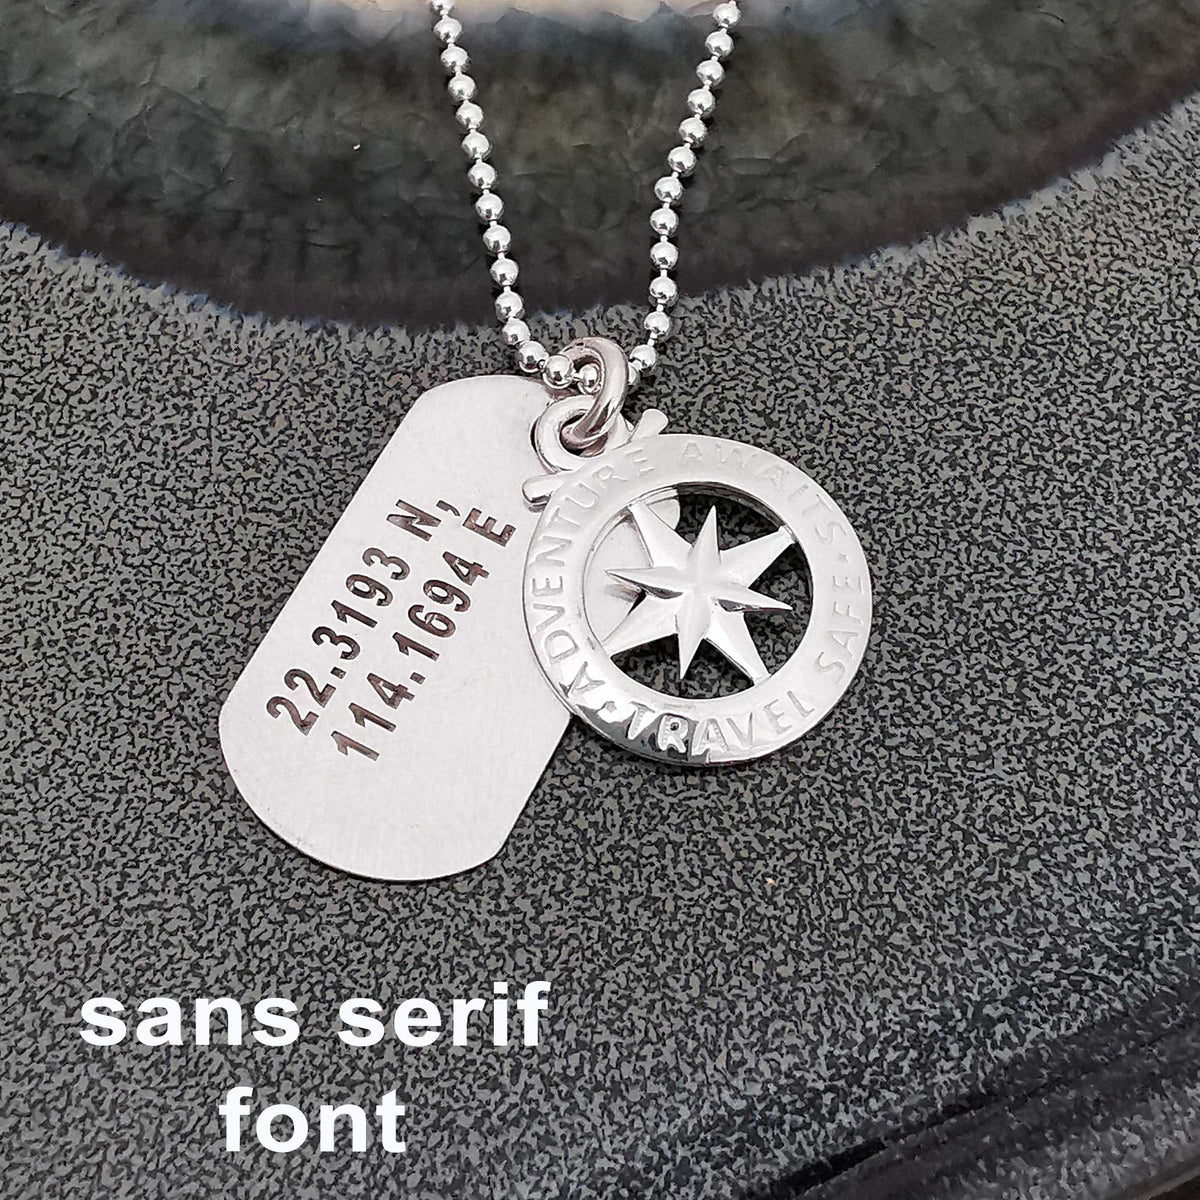 script font engraved dog tag travel safe necklace travel gift present coordinates custom engraved